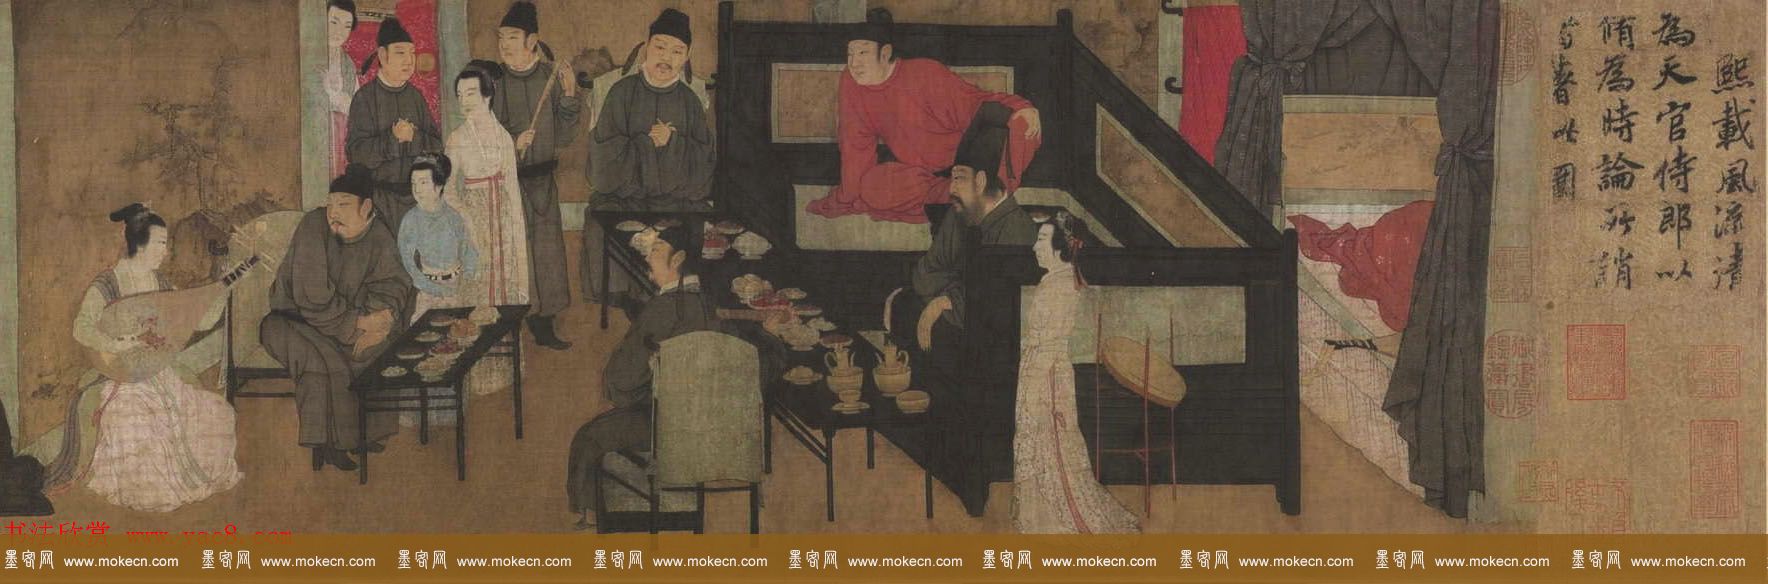 五代顾闳中人物画卷《韩熙载夜宴图》北京故宫博物院藏